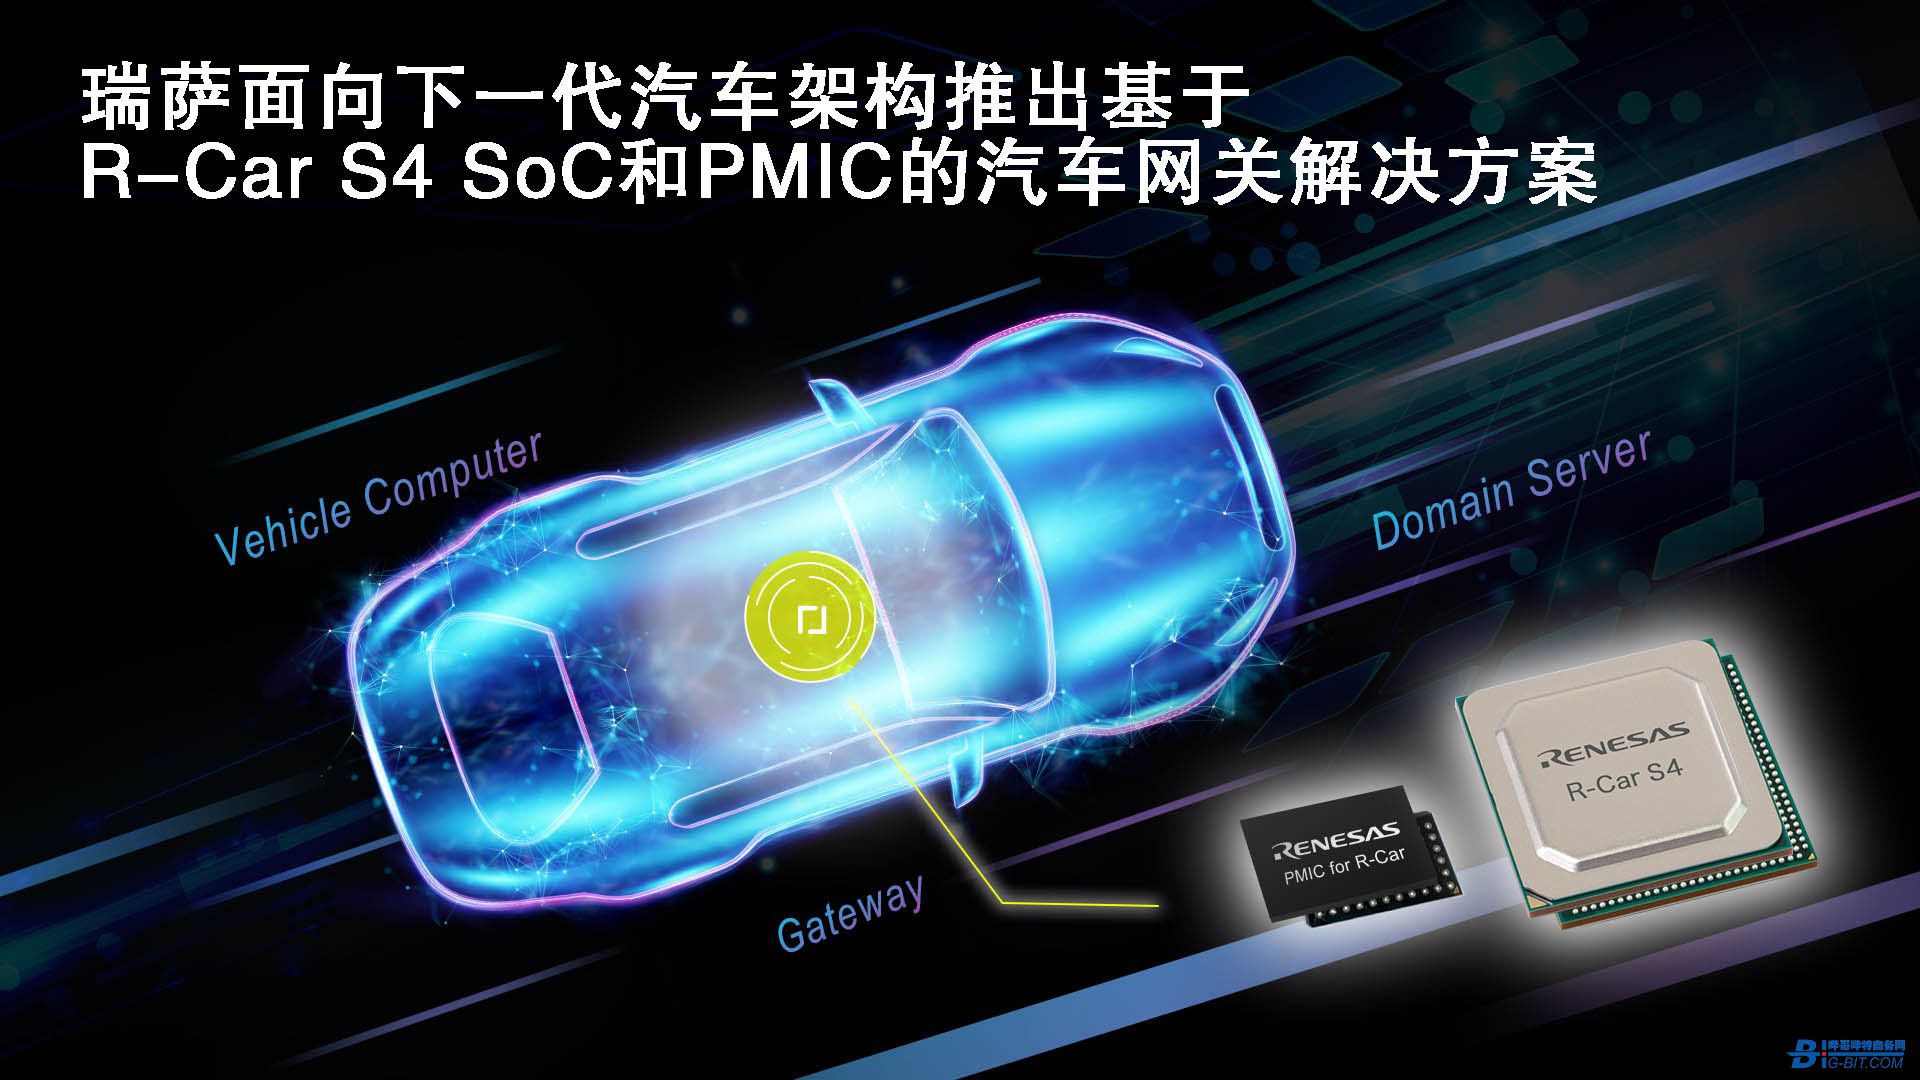 瑞萨电子推出基于新型R-Car S4 SoC和PMIC的汽车网关解决方案 用于下一代汽车计算机